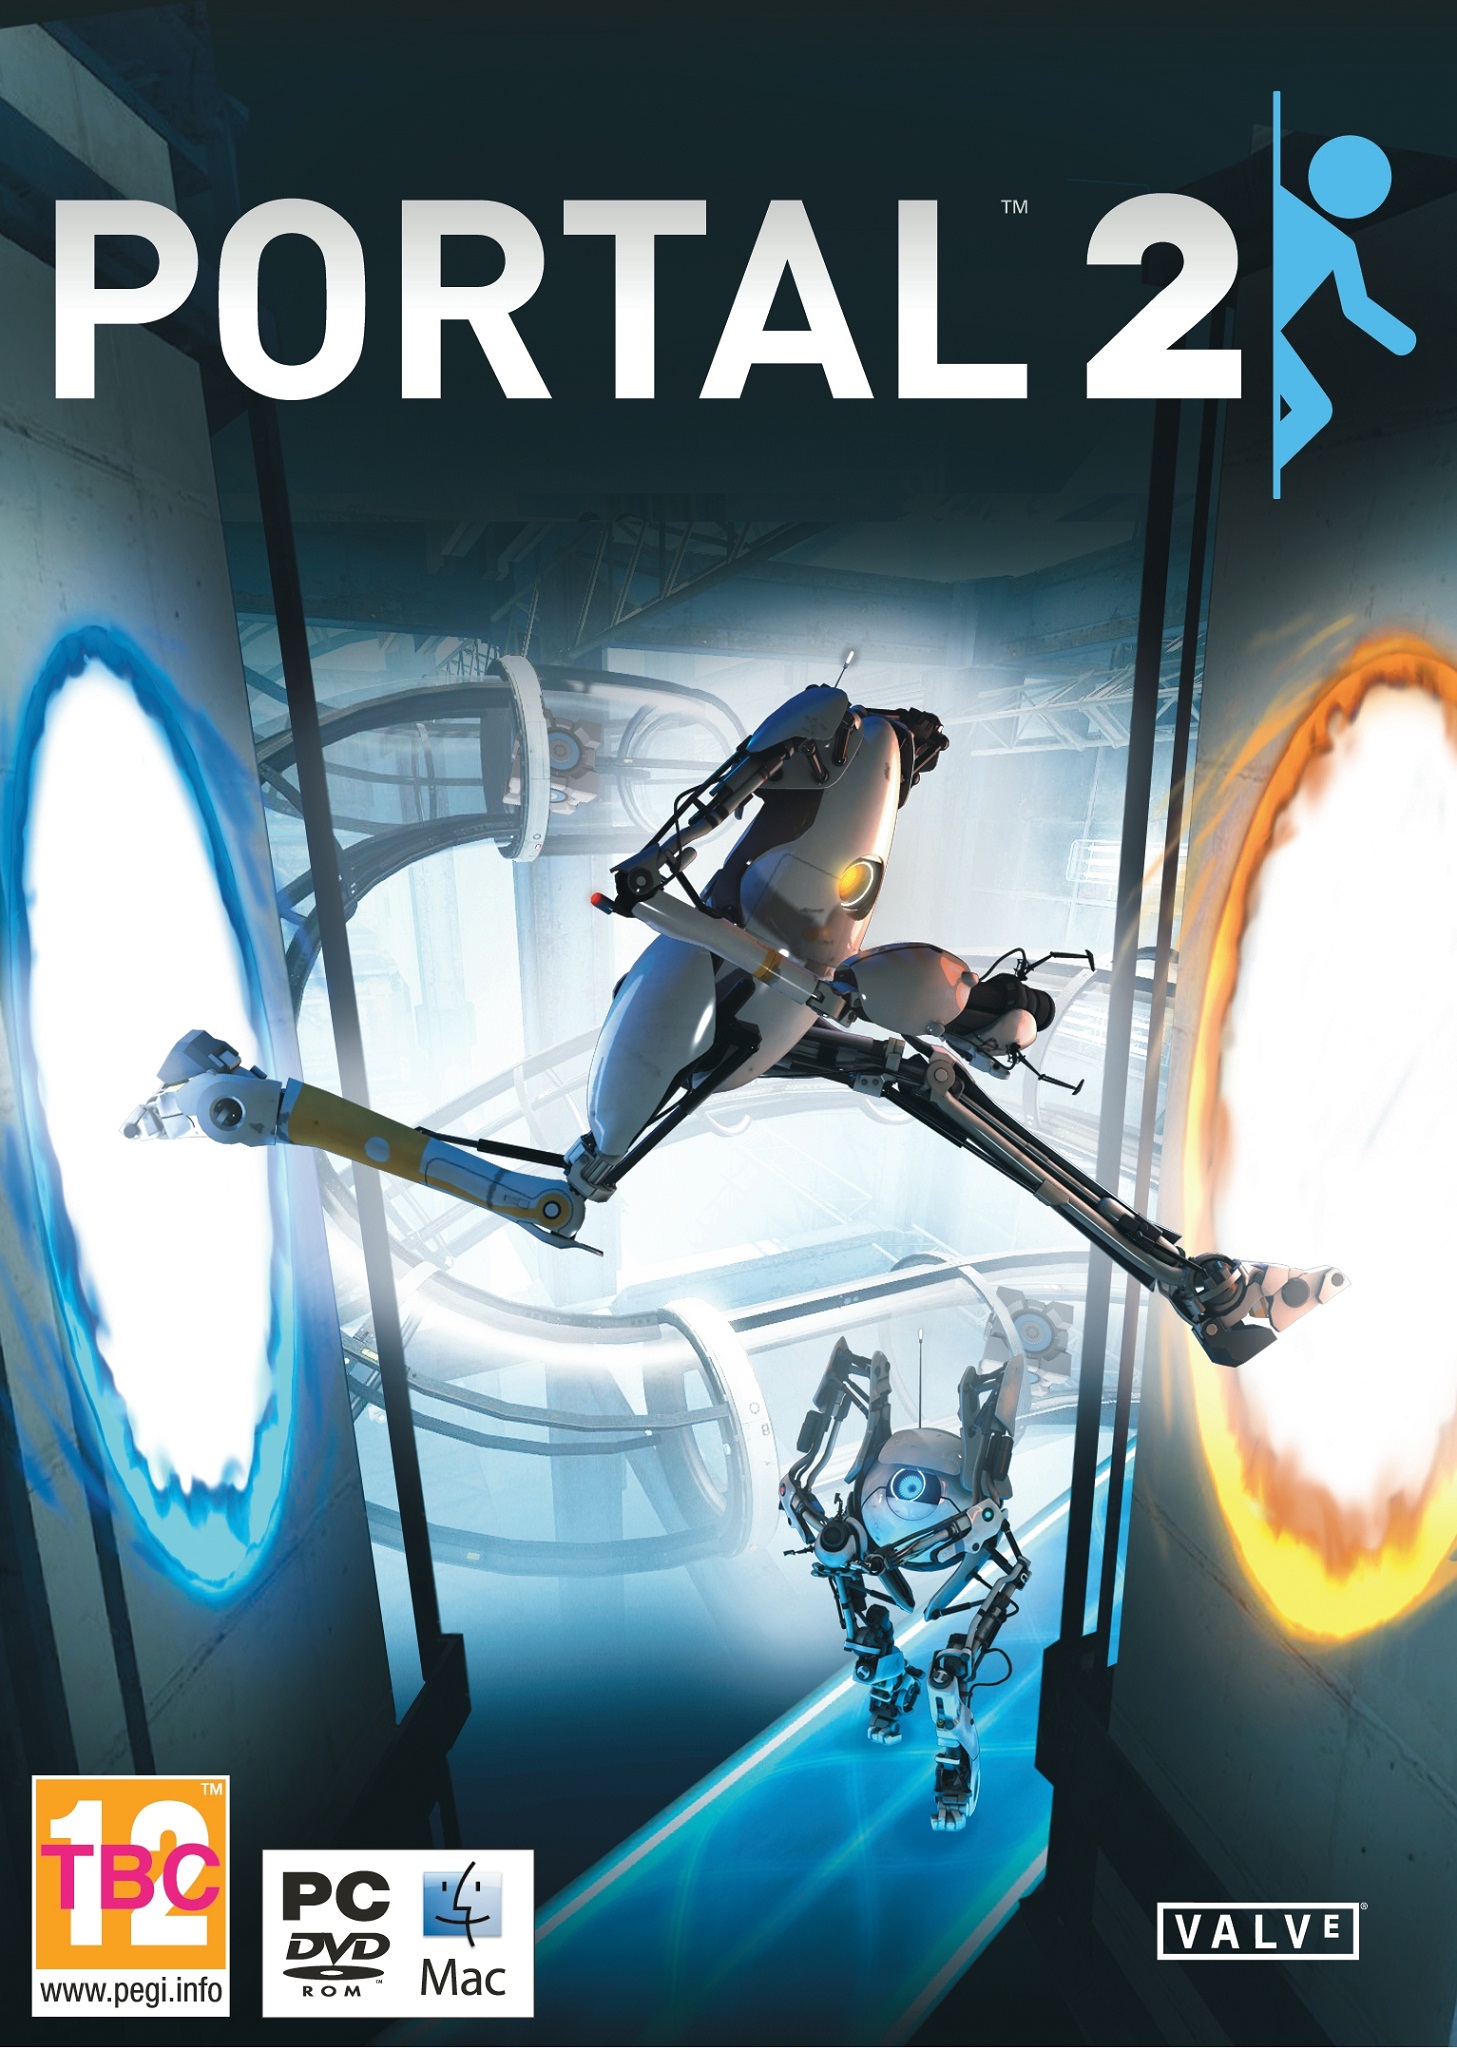 Portal_2_cover.jpg